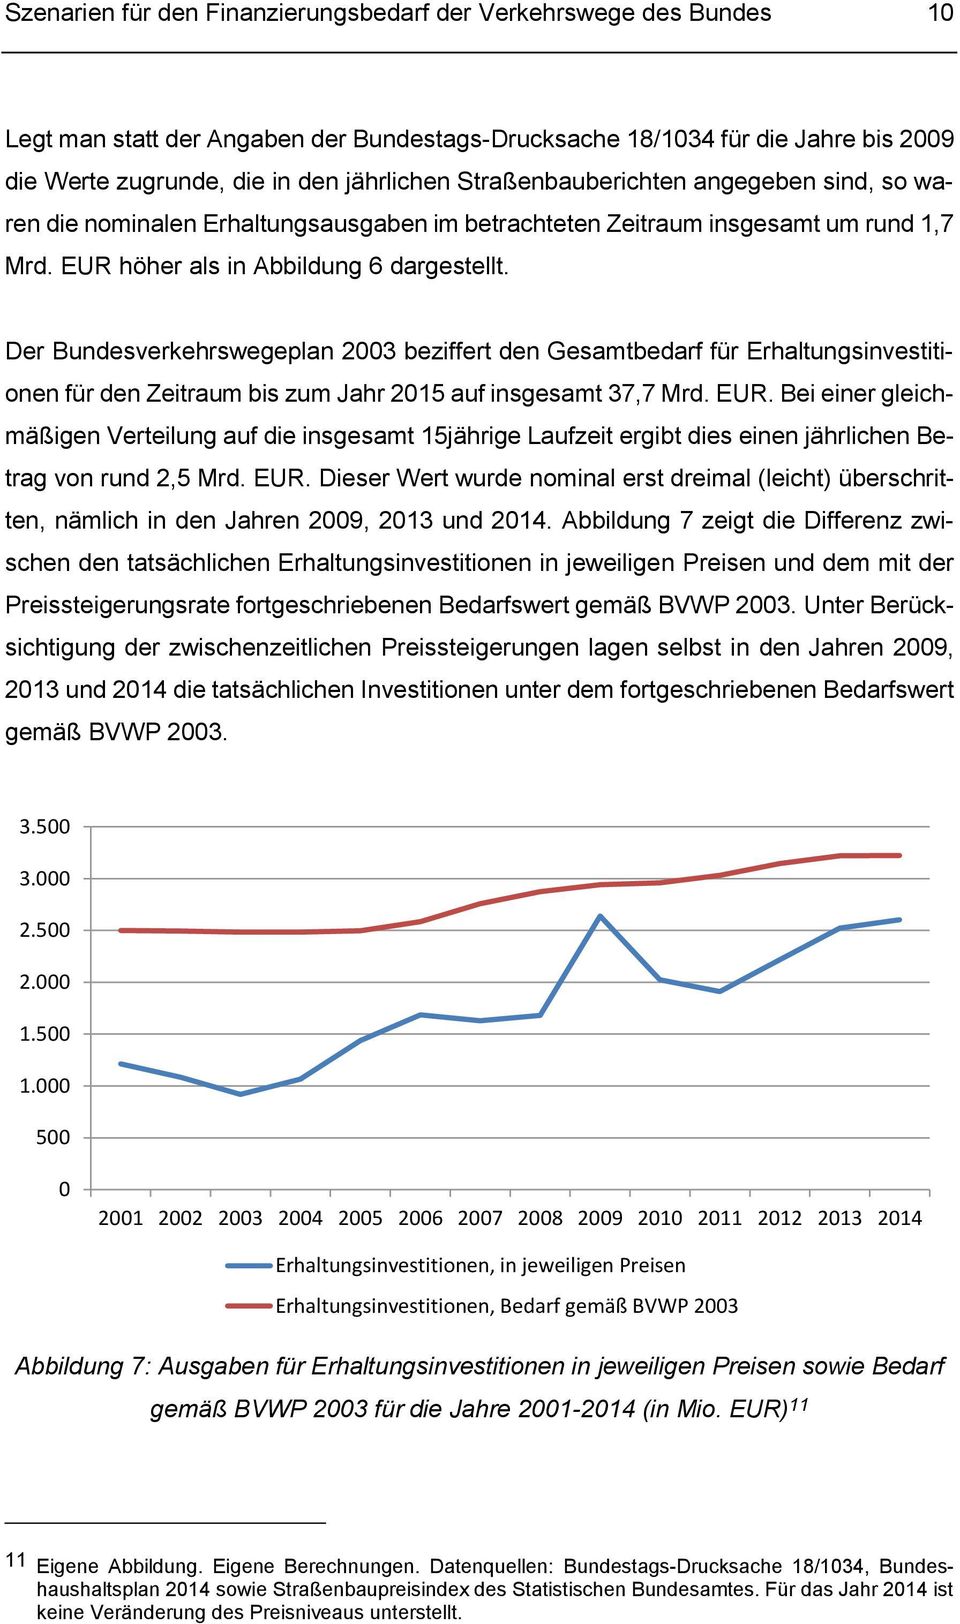 Der Bundesverkehrswegeplan 2003 beziffert den Gesamtbedarf für Erhaltungsinvestitionen für den Zeitraum bis zum Jahr 2015 auf insgesamt 37,7 Mrd. EUR.